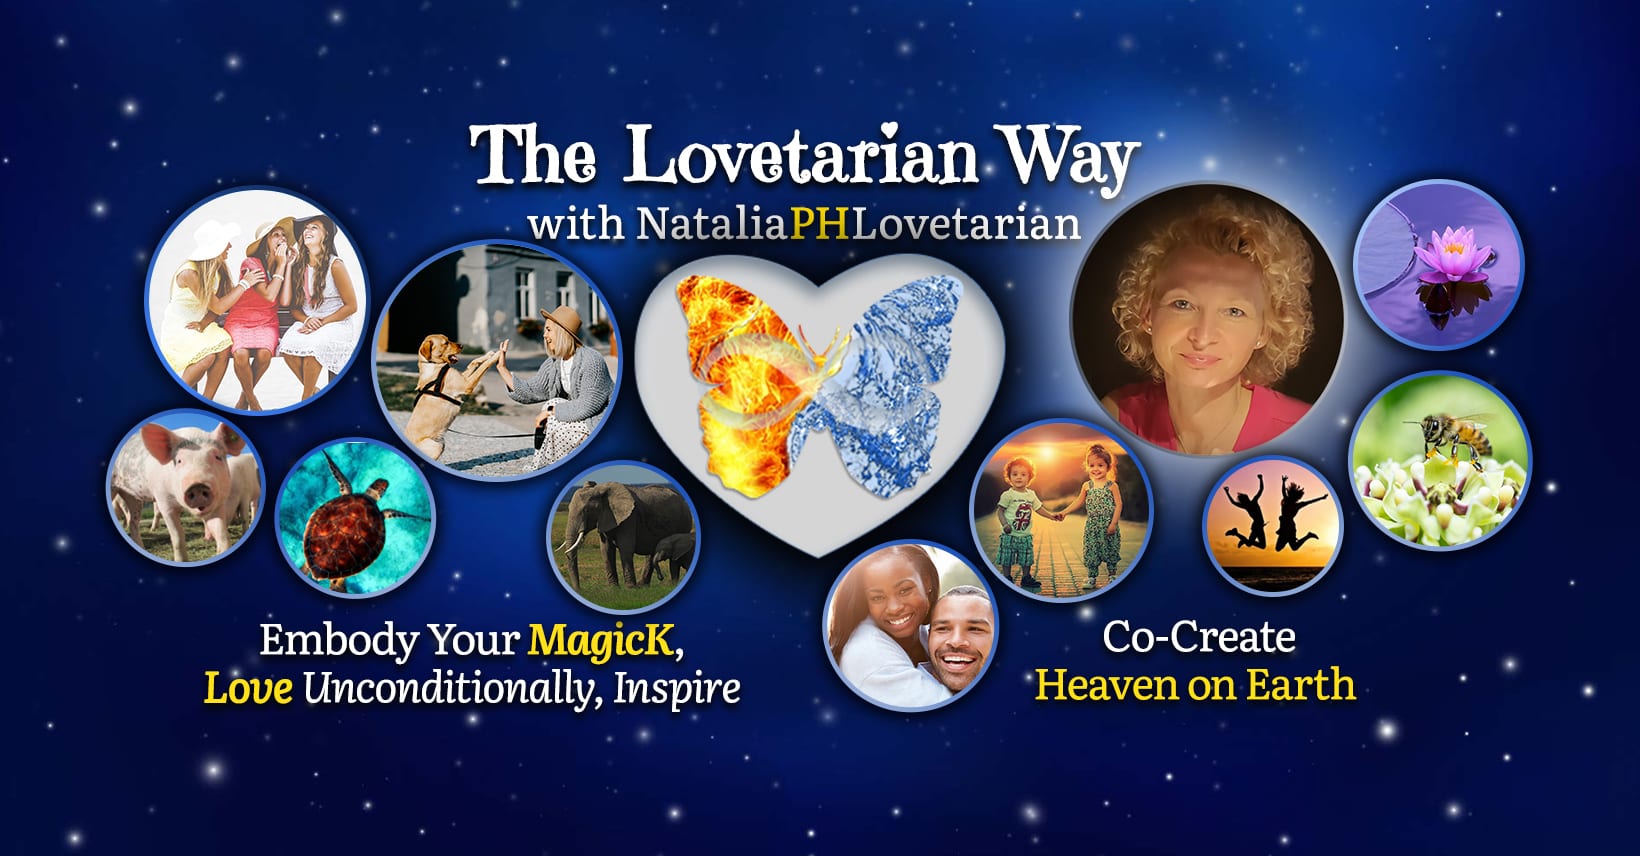 The Lovetarian Way